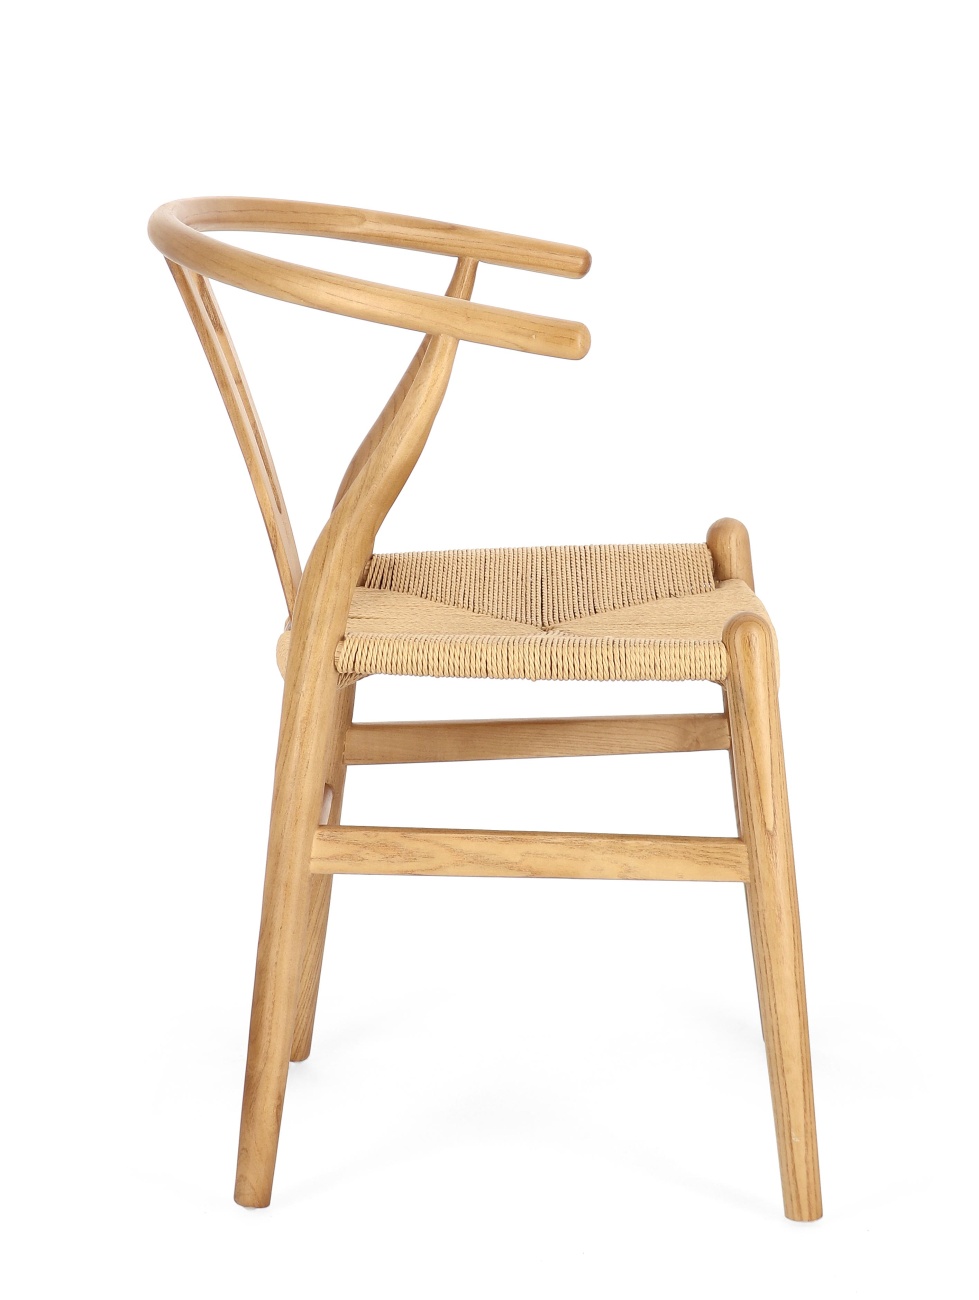 Der Esszimmerstuhl Artas überzeugt mit seinem modernen Stil. Gefertigt wurde er aus Seilen, welche einen natürlichen Farbton besitzt. Das Gestell ist aus Ulmenholz und hat ein natürliche Farbe. Der Stuhl besitzt eine Sitzhöhe von 46 cm.